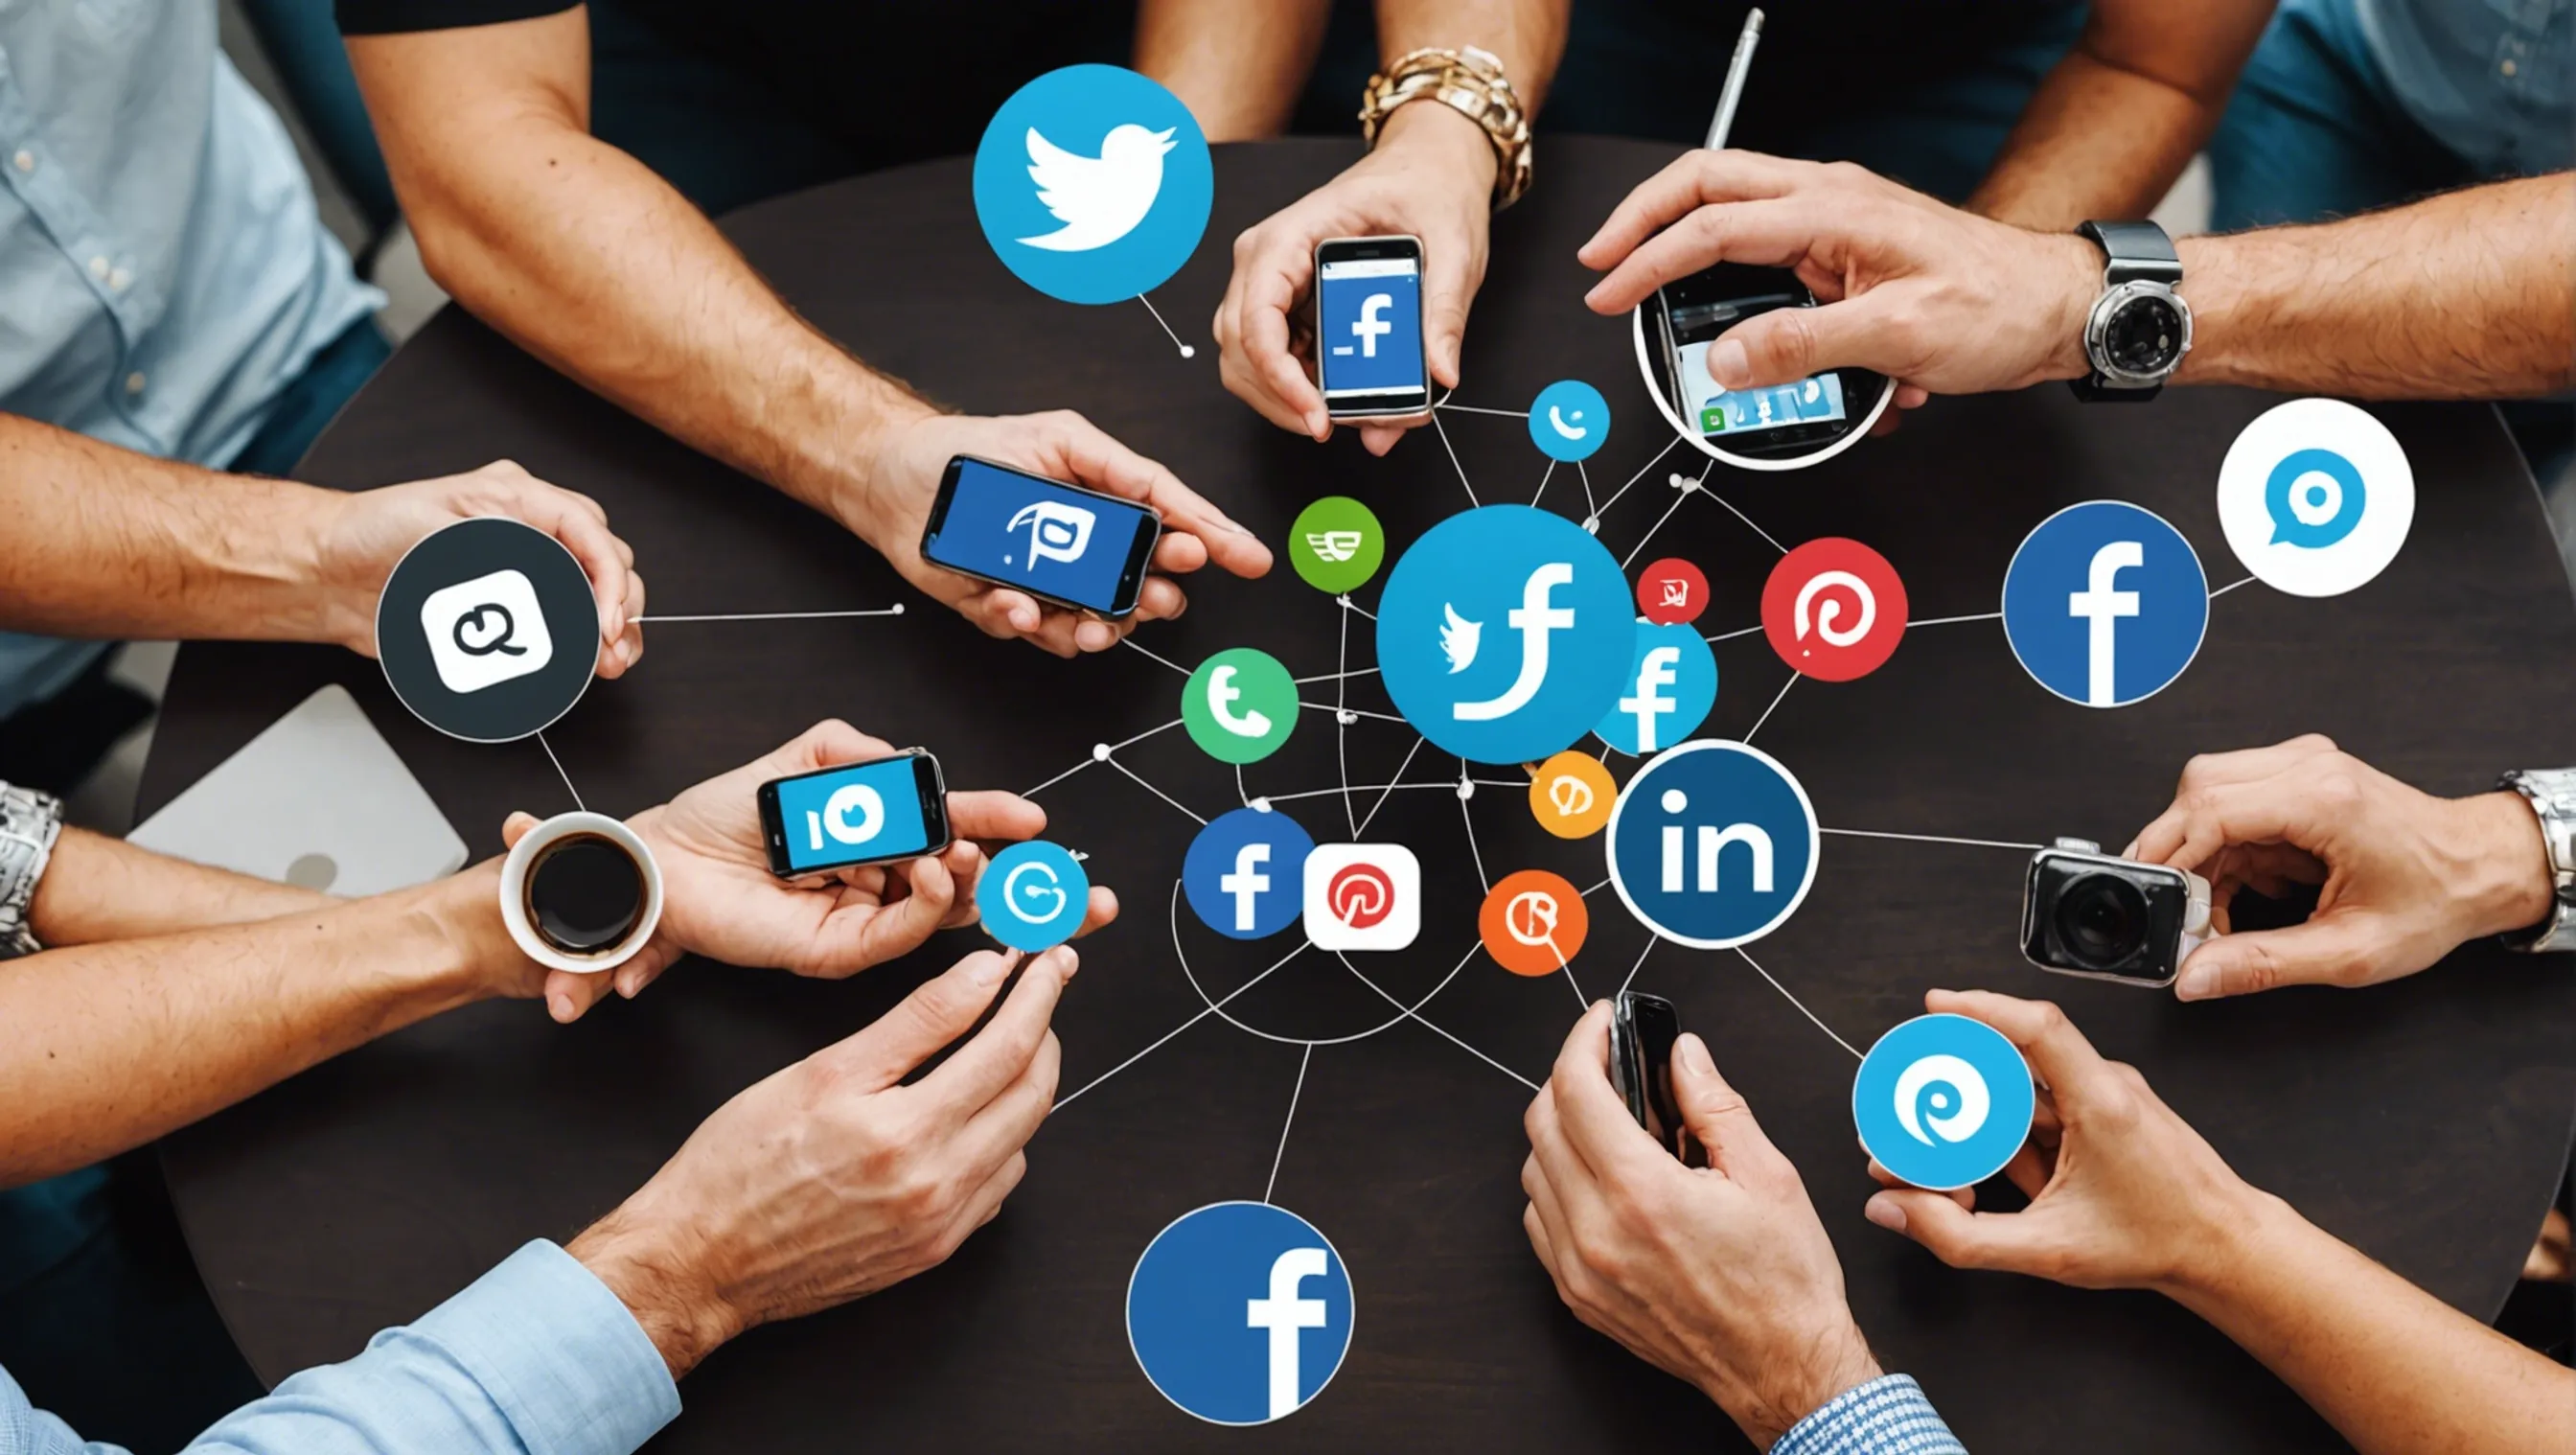 Social media engagement tactics